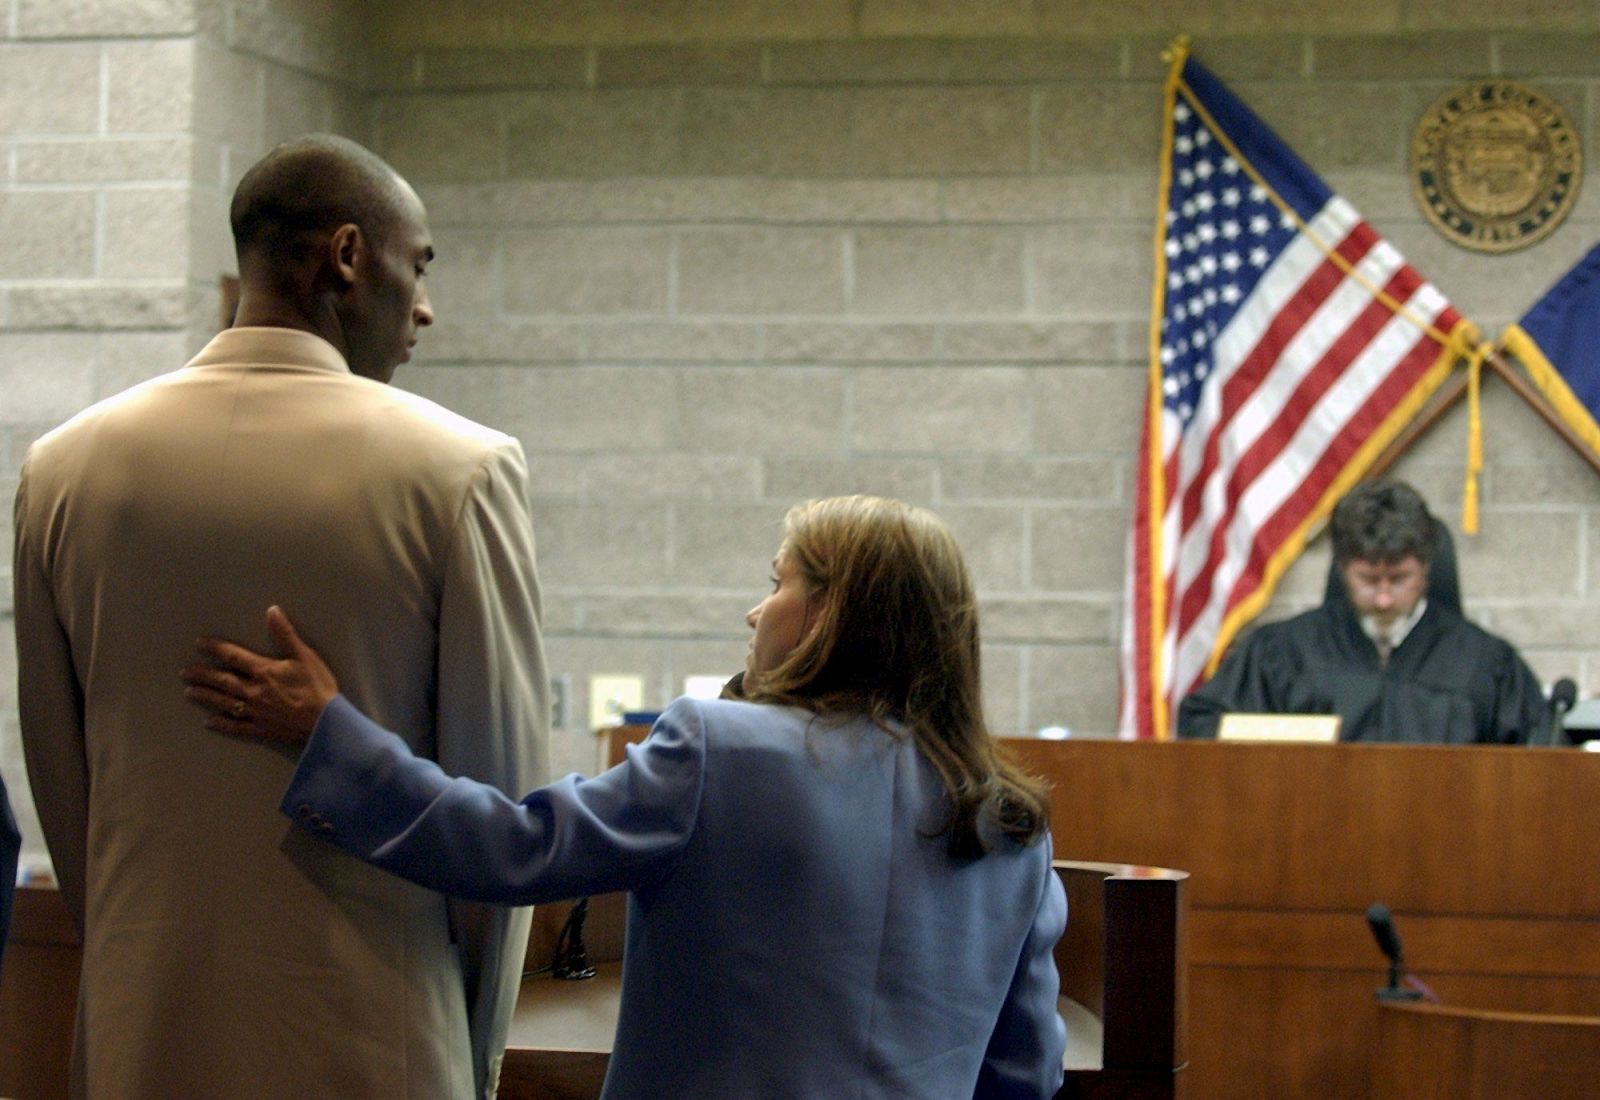 Kobe sa pozerá na svoju obhajkyňu Pamelu Mackeyovú, kým ho sudca Frederick Gannet poúča o jeho právach, počas súdneho pojednávania v coloradskom meste Eagle 6. augusta